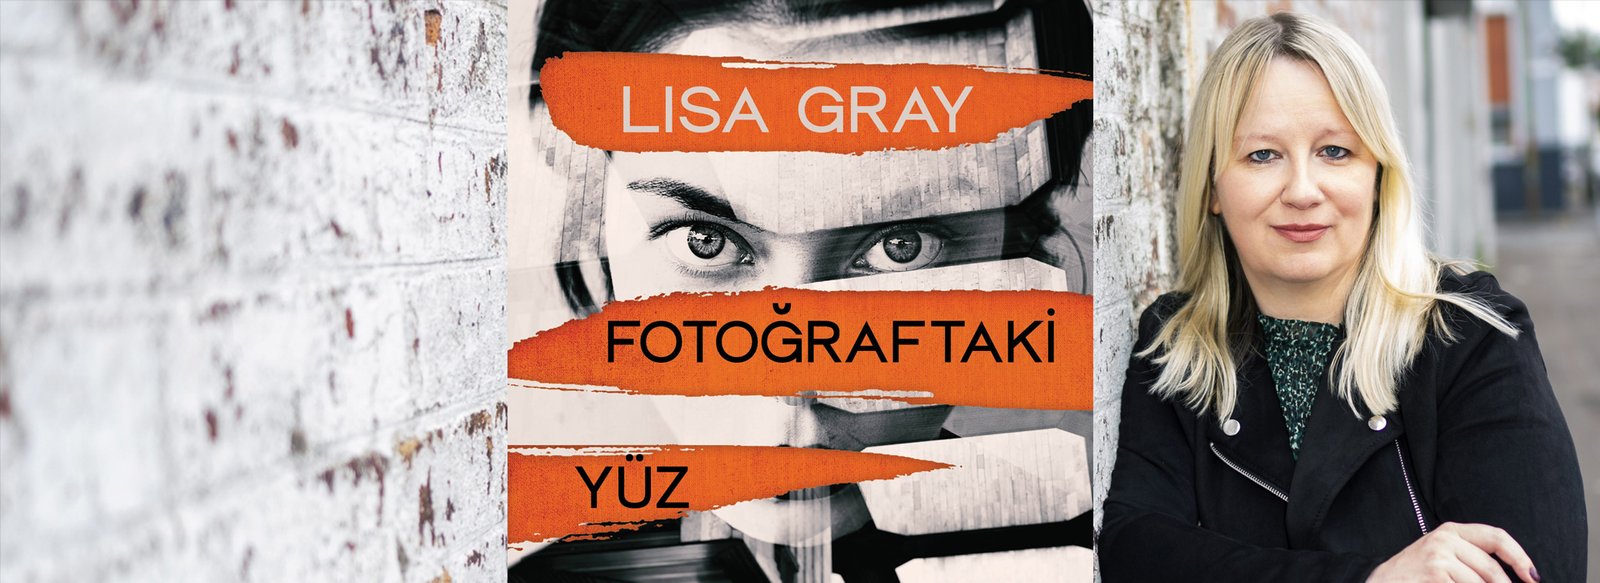 Lisa Gray’in, çok Beğenilen Jessica Shaw Serisinin Ilk Kitabı Fotoğraftaki Yüz, Epsilon Logosuyla Türkiye’deki Okurlarla Buluşuyor (1)